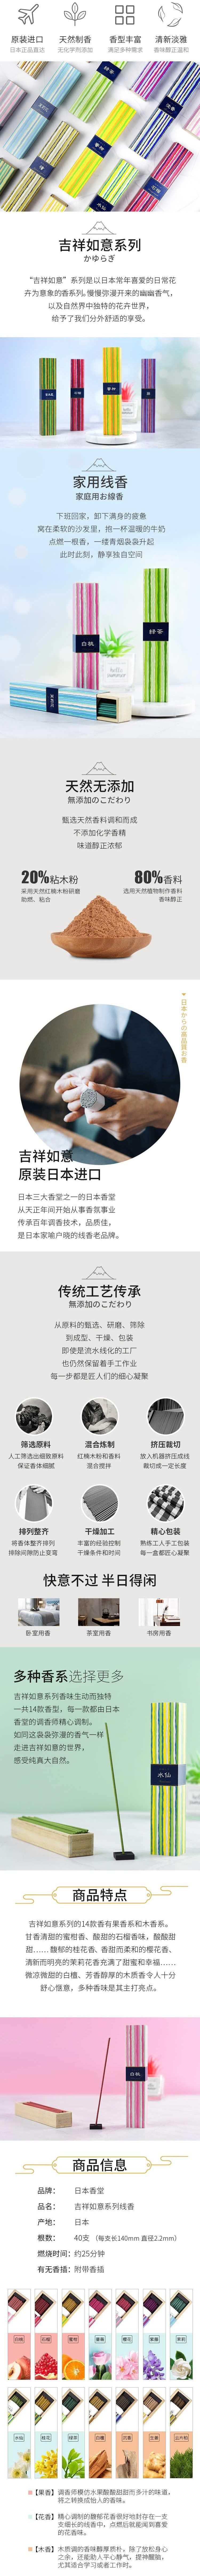 【日本直邮】Nippon Kodo日本香堂 吉祥如意天然熏香檀香线香40支入 发货需3-5日 蜜柑